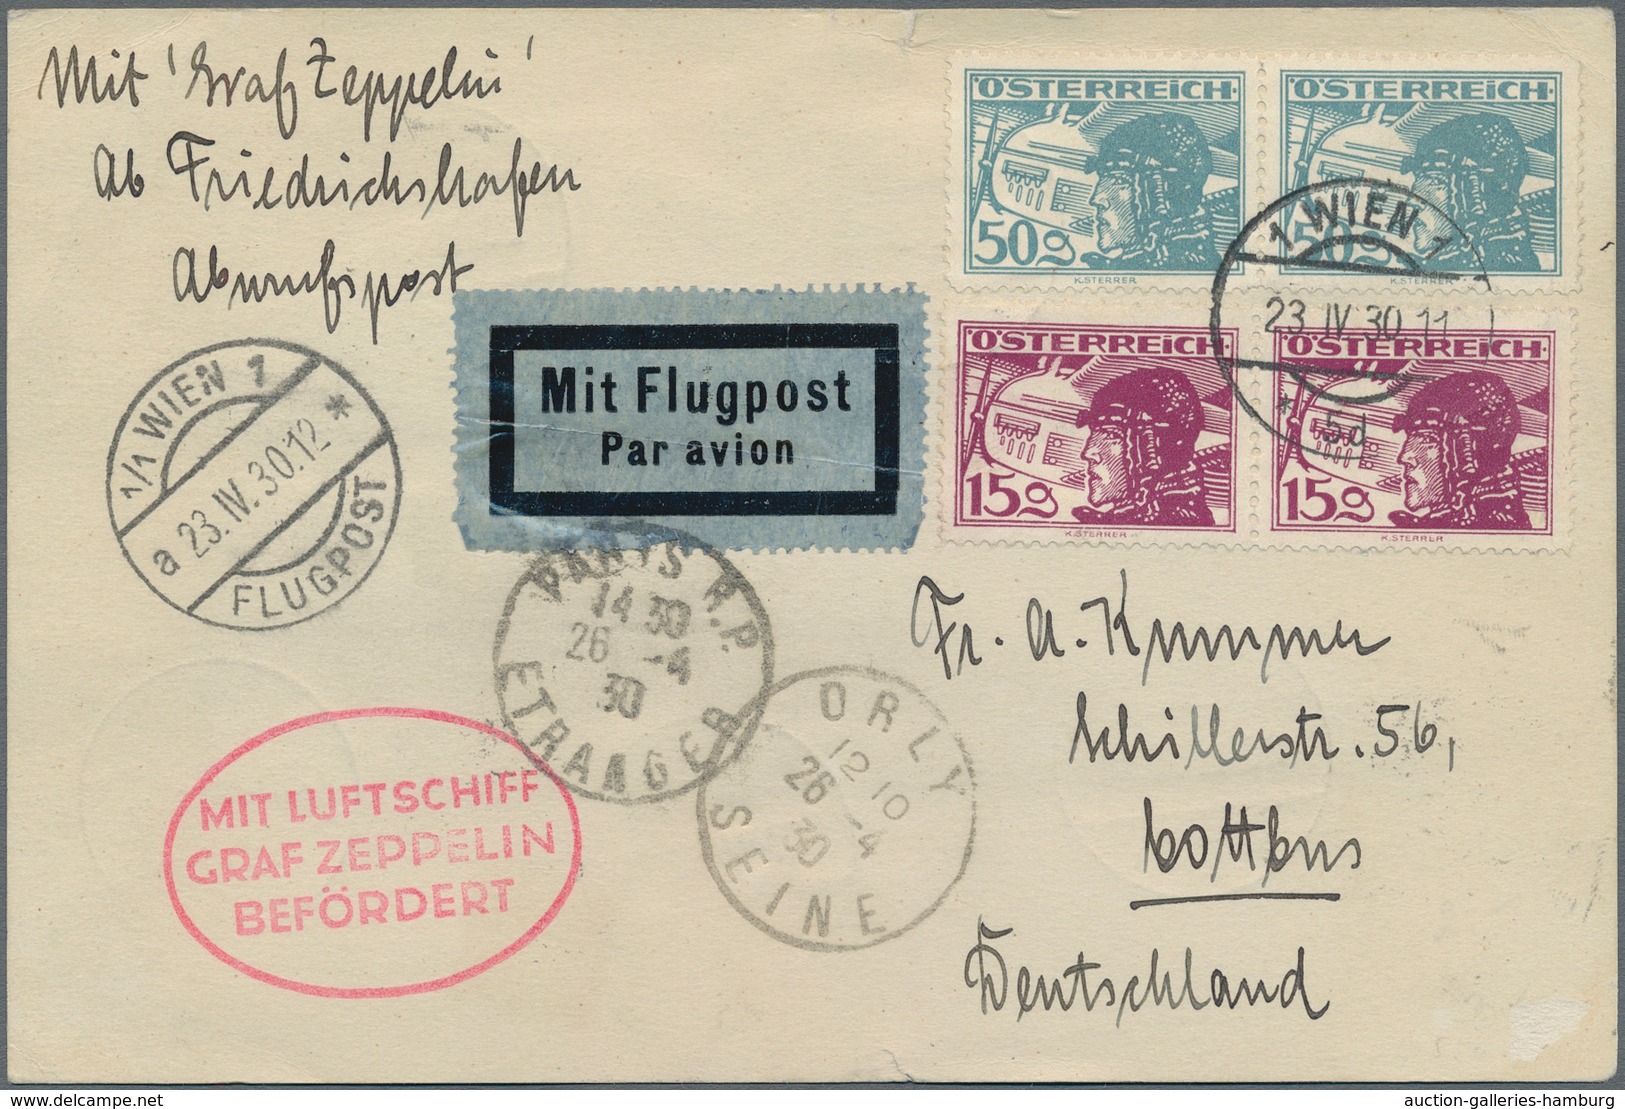 Zeppelinpost Europa: 1930, Englandfahrt, Österreichische Post, Karte Mit Dekorativer Flugpost-Franka - Sonstige - Europa